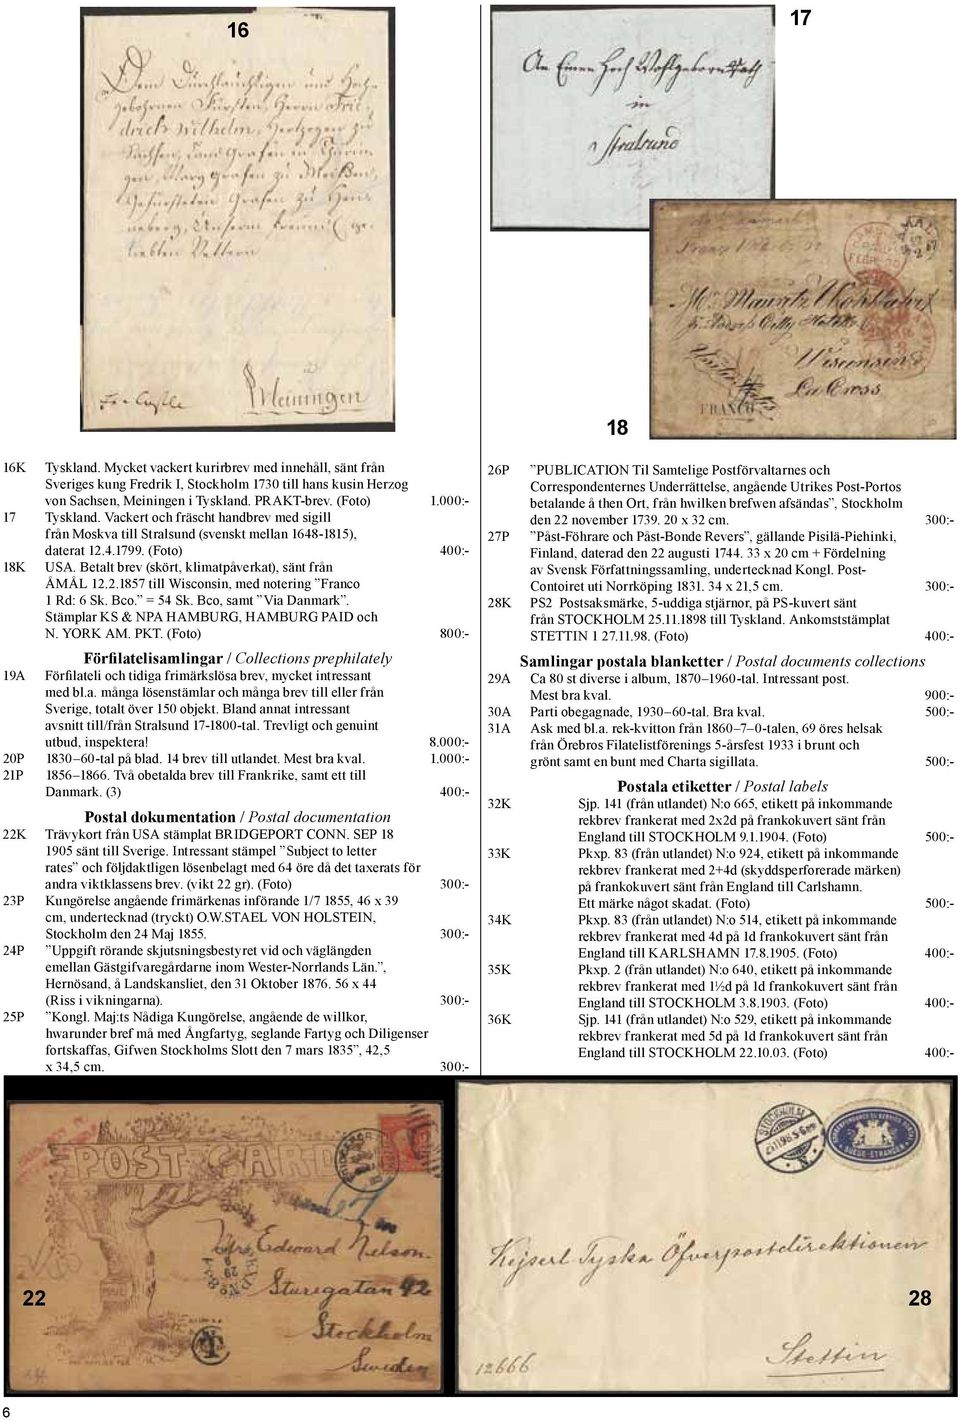 Betalt brev (skört, klimatpåverkat), sänt från ÅMÅL 12.2.1857 till Wisconsin, med notering Franco 1 Rd: 6 Sk. Bco. = 54 Sk. Bco, samt Via Danmark. Stämplar KS & NPA HAMBURG, HAMBURG PAID och N.